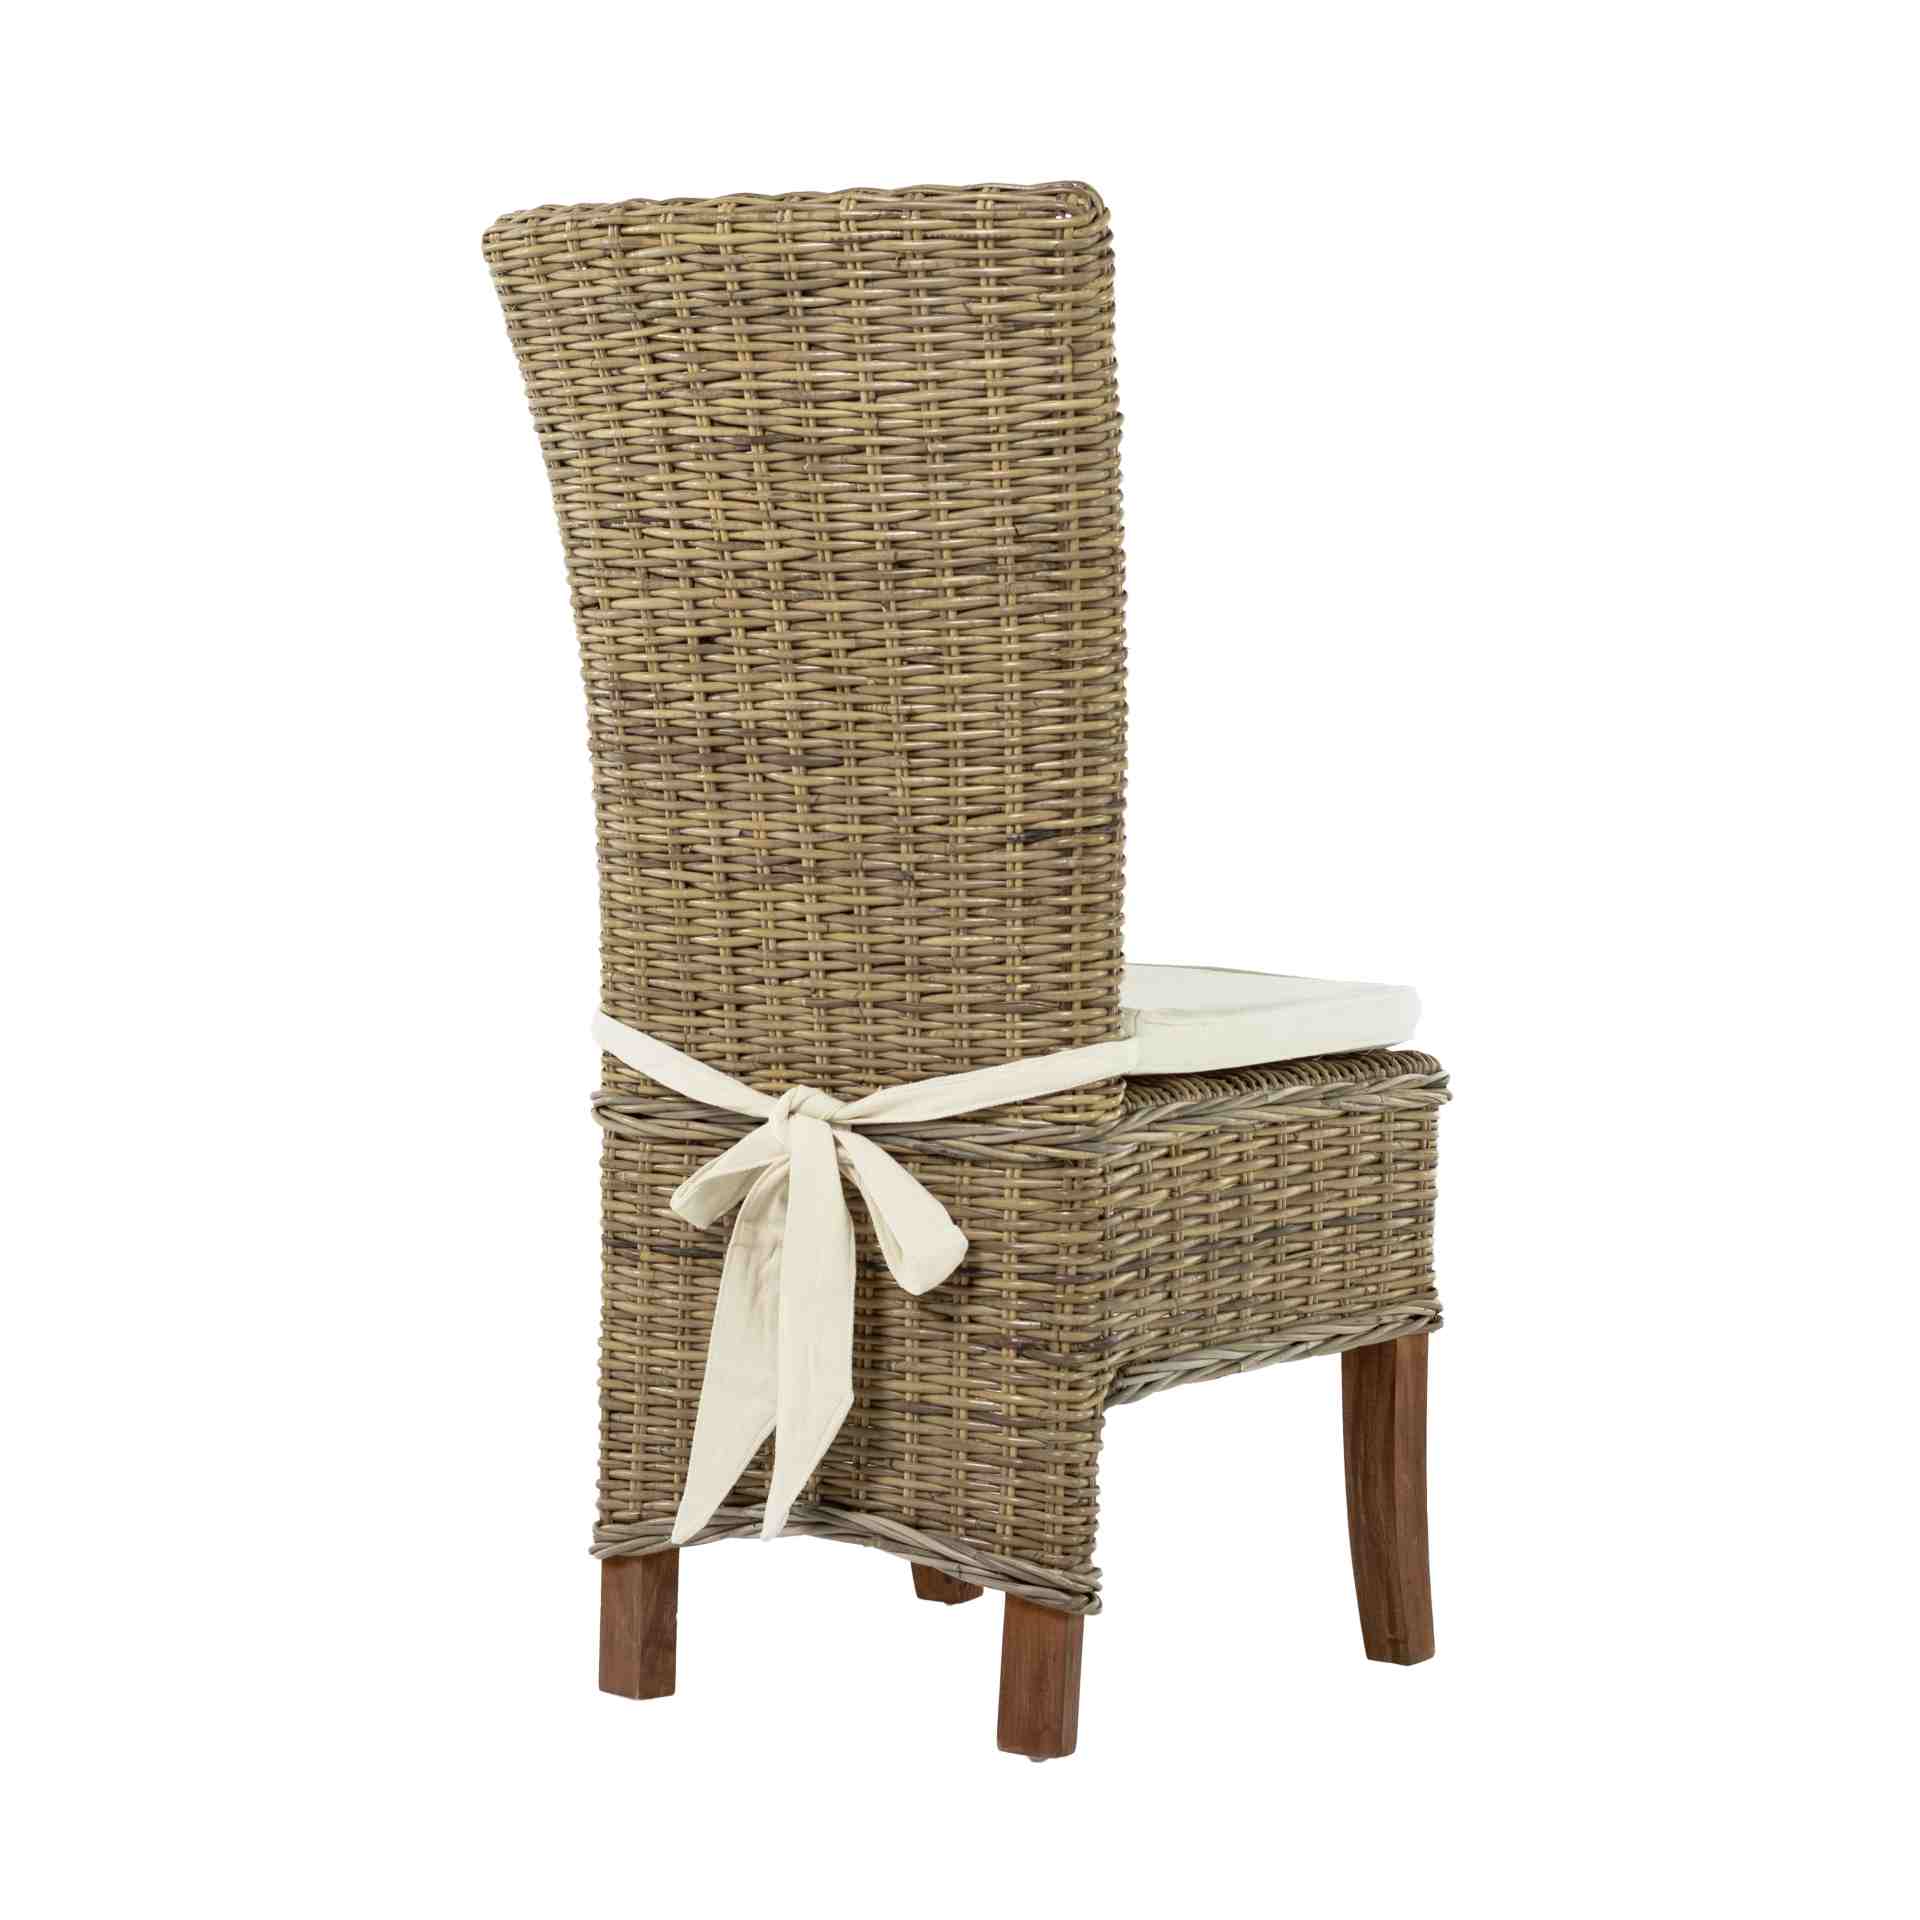 Der Esszimmerstuhl Salsa überzeugt mit seinem Landhaus Stil. Gefertigt wurde er aus Rattan, welches einen natürlichen Farbton besitzt. Der Stuhl verfügt über eine Armlehne und ist im 2er-Set erhältlich. Die Sitzhöhe beträgt beträgt 46 cm.